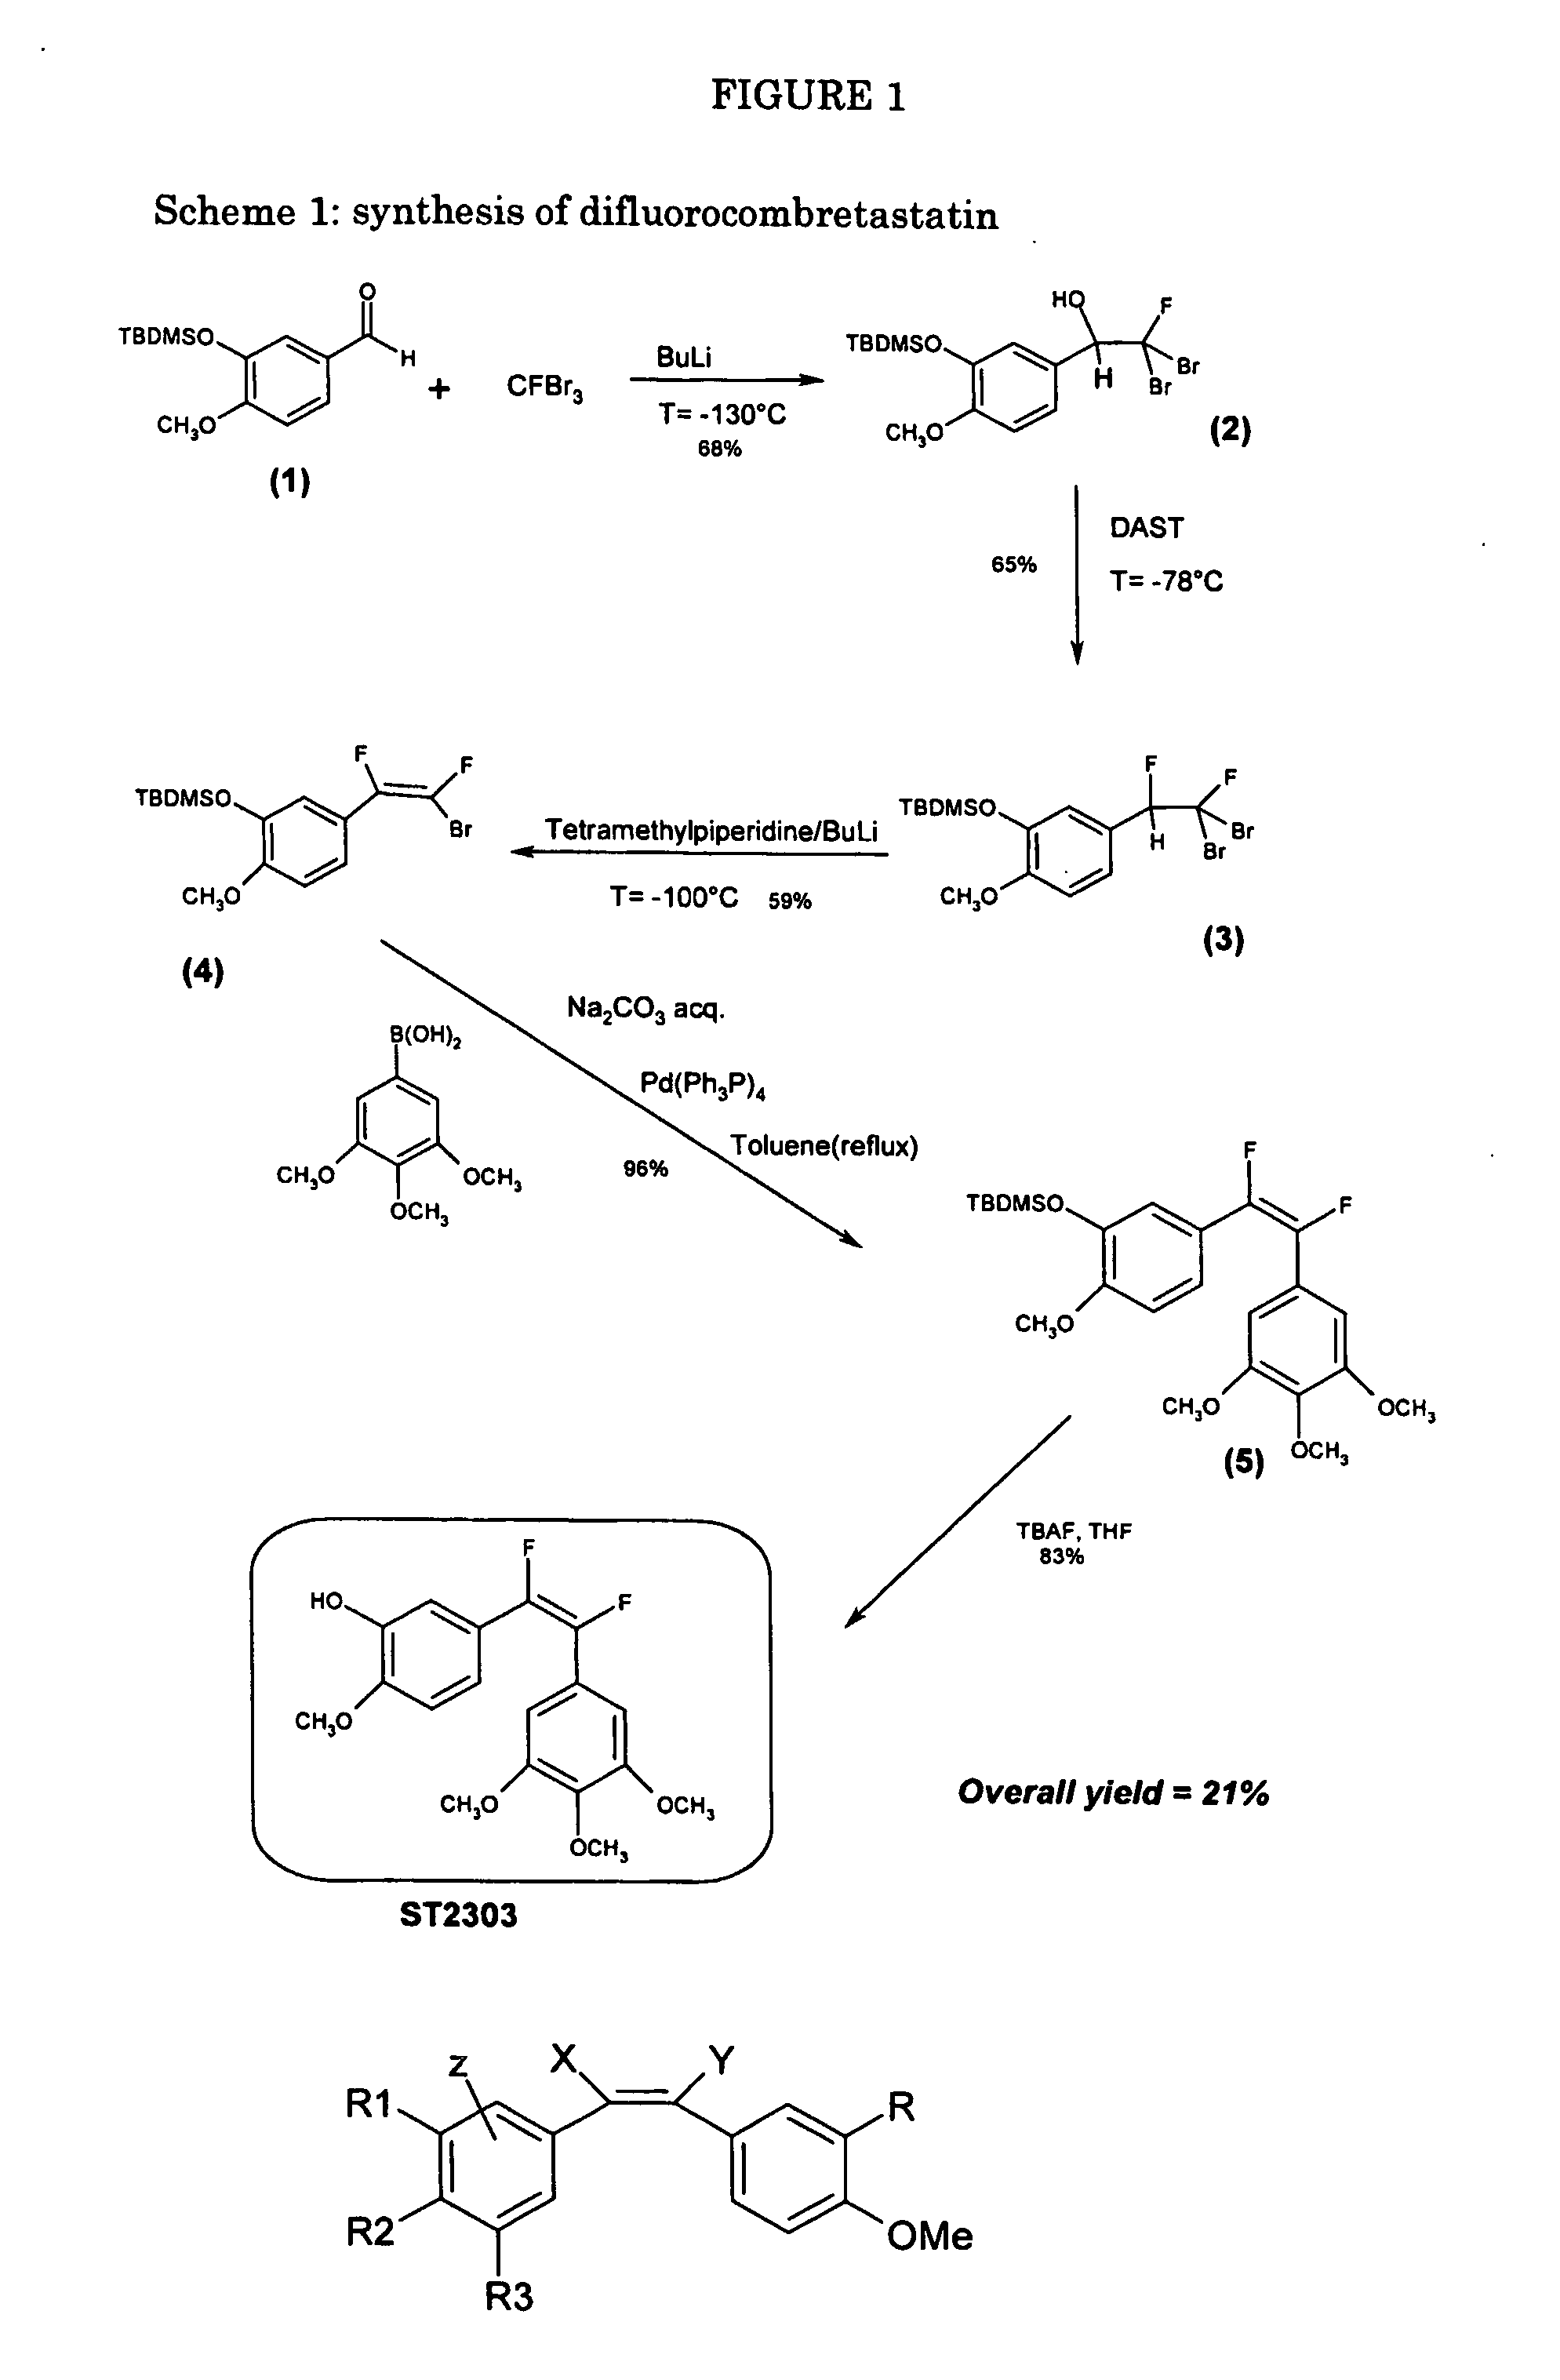 Fluorocombretastatin and derivatives thereof